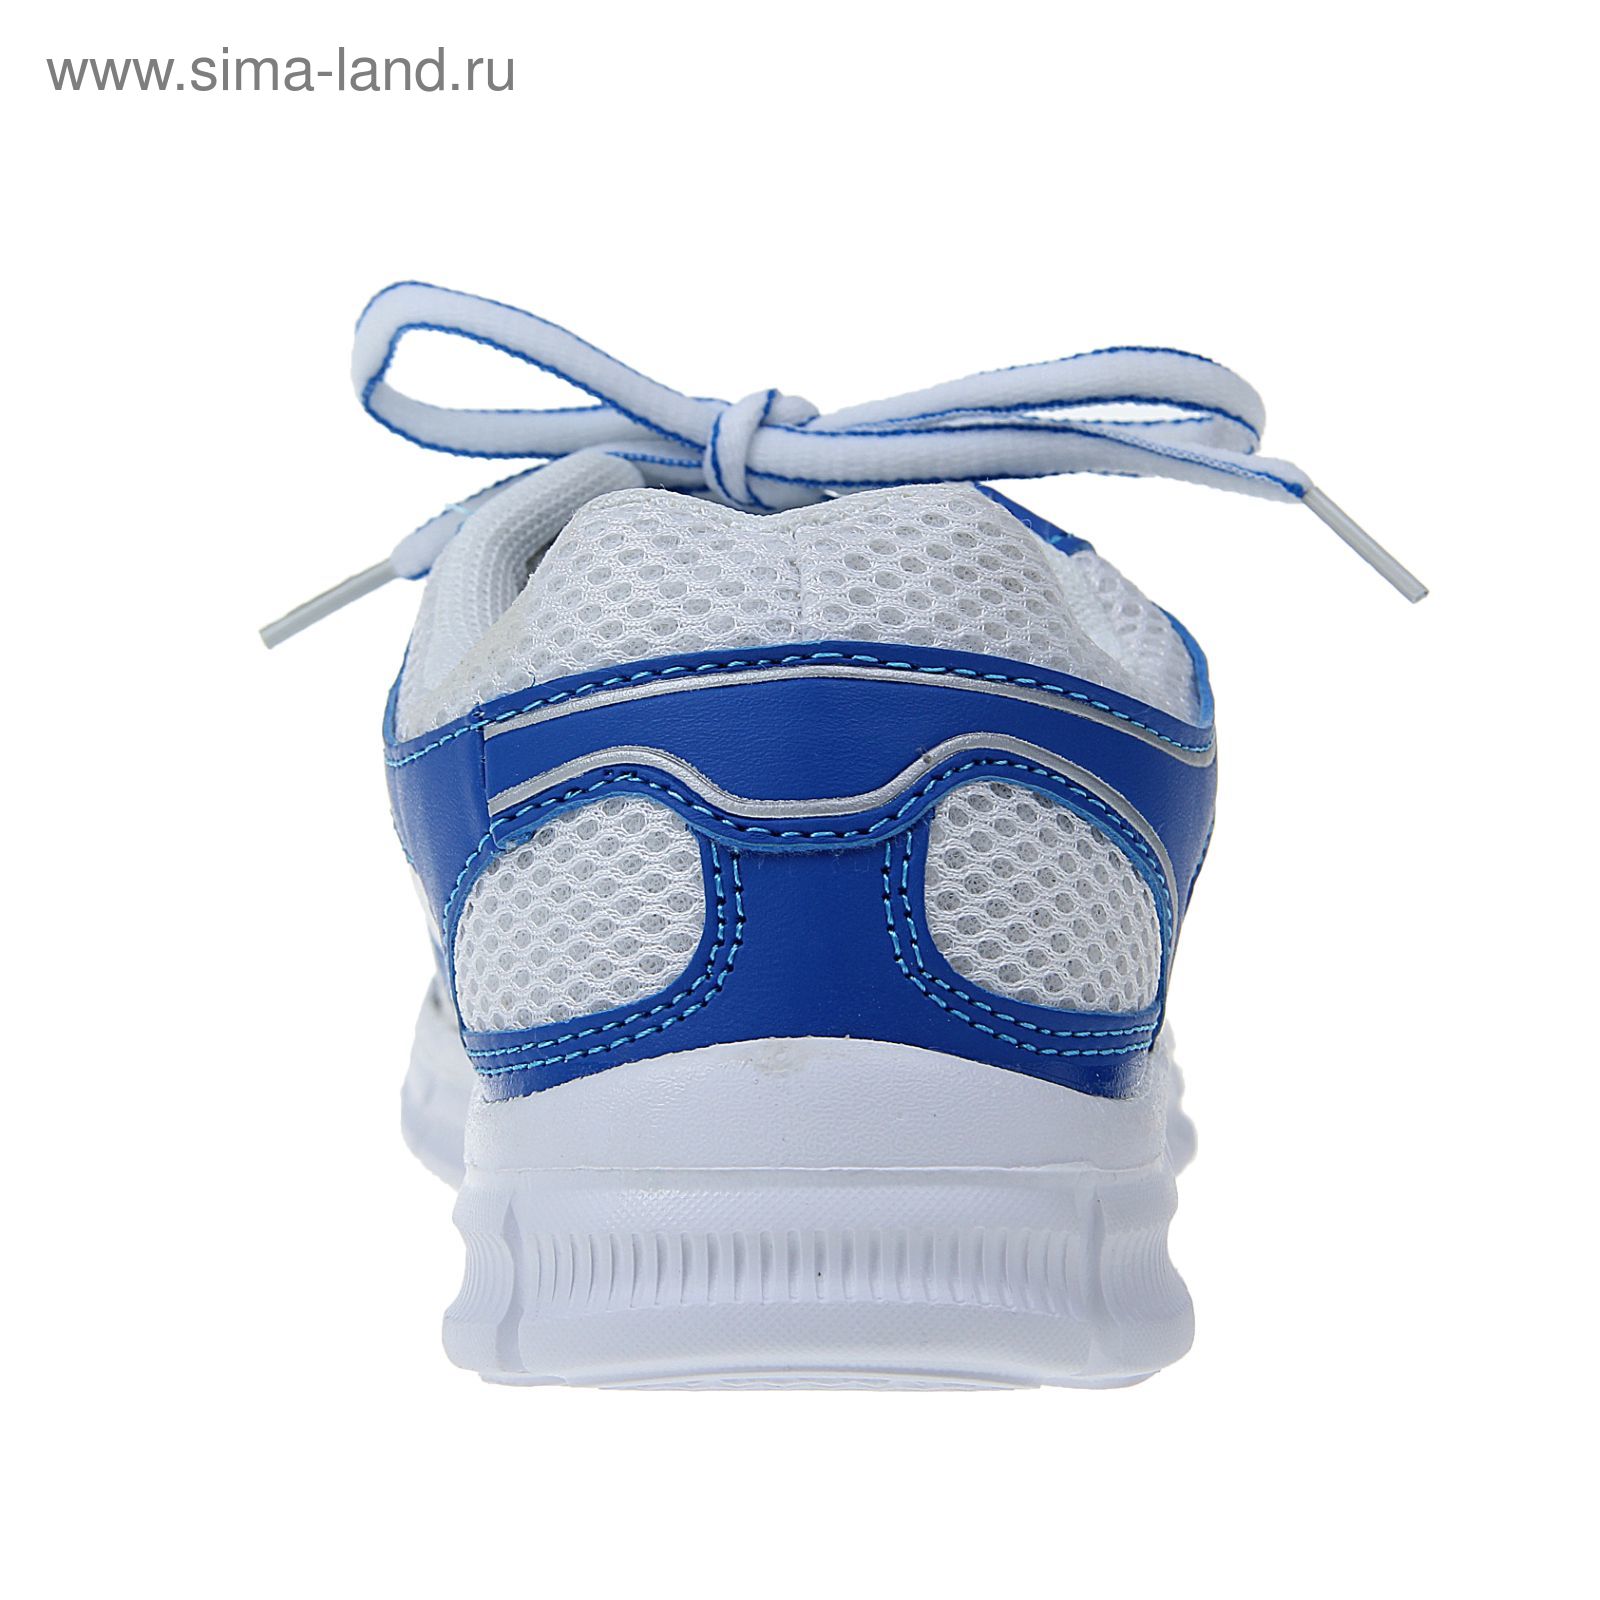 Кроссовки женские, цвет белый/синий, размер 38 (арт. LSW 0026-2-10)